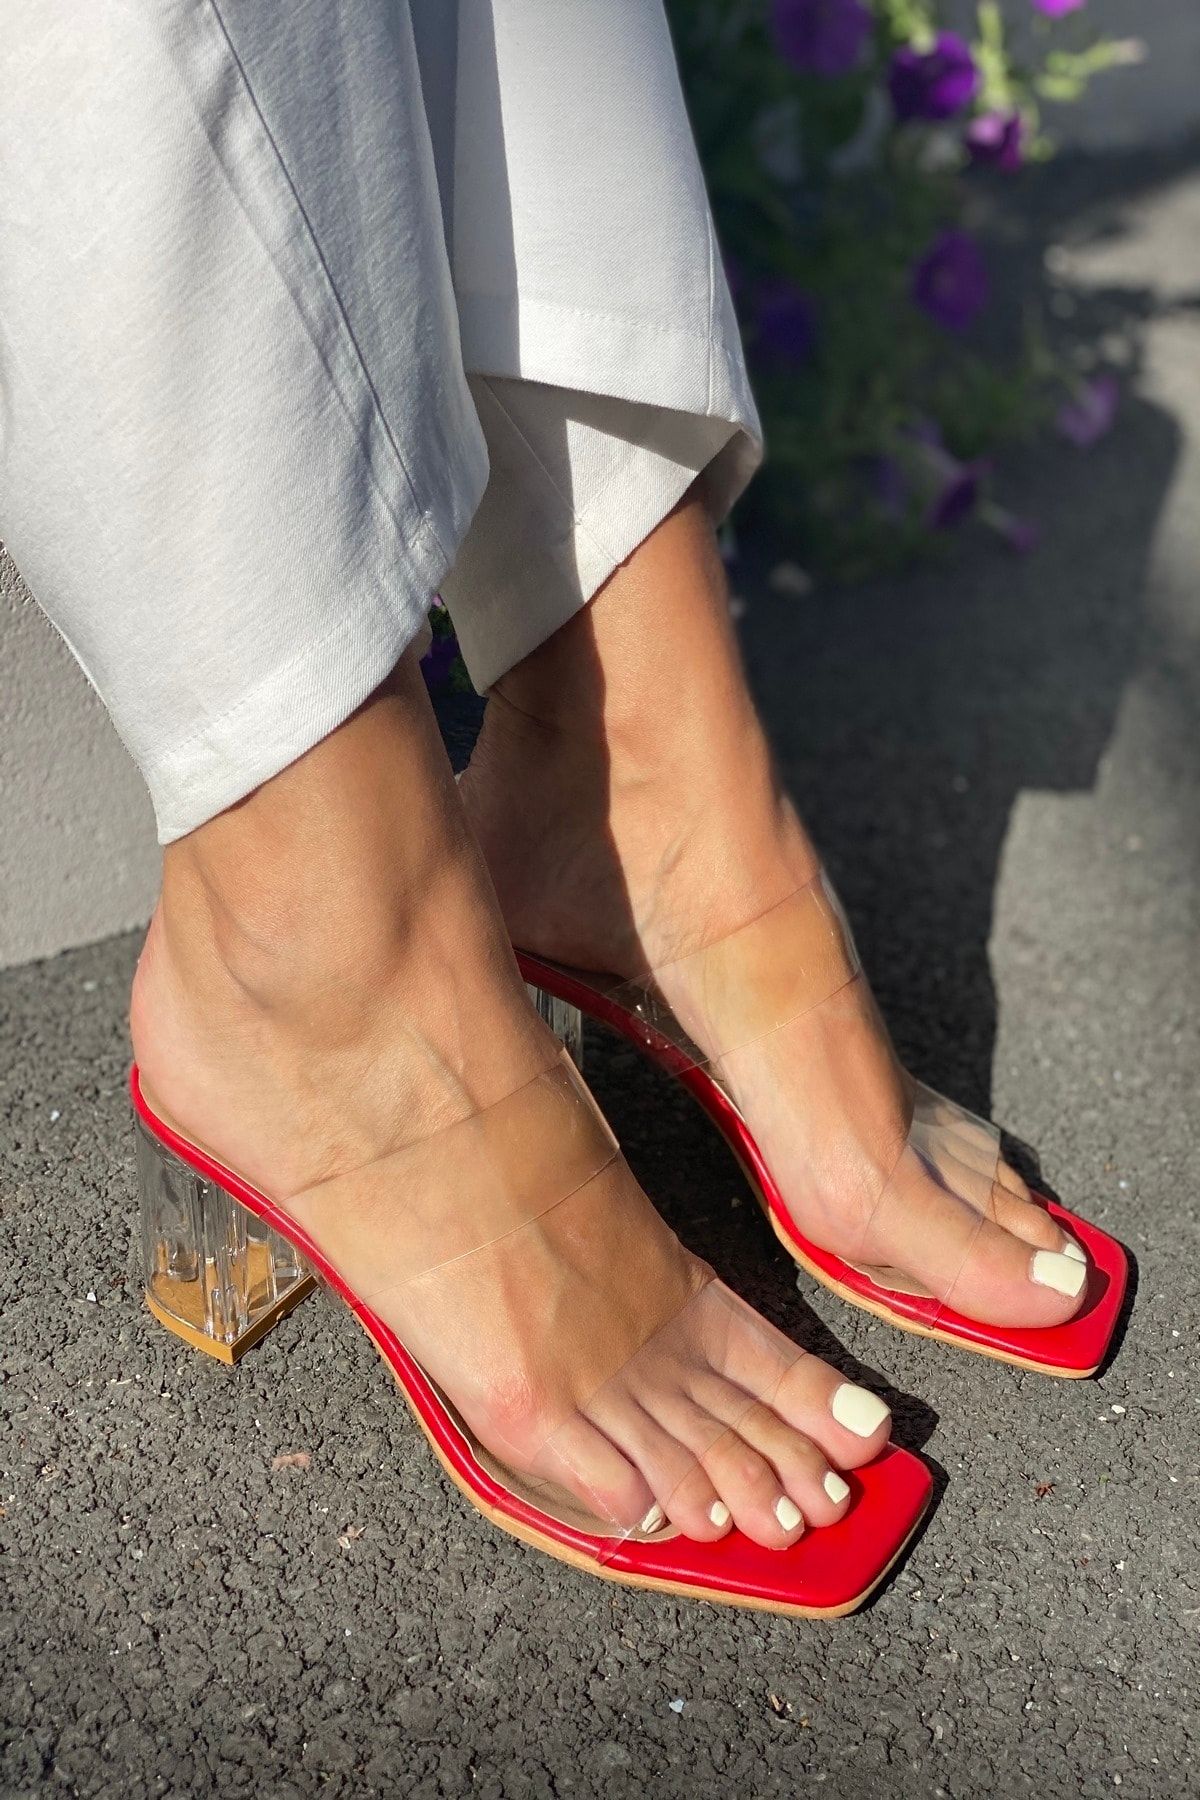 İnan Ayakkabı Kadin Kırmızı Şeffaf Bant Ve Topuklu Ayakkabı (6 CM TOPUK)